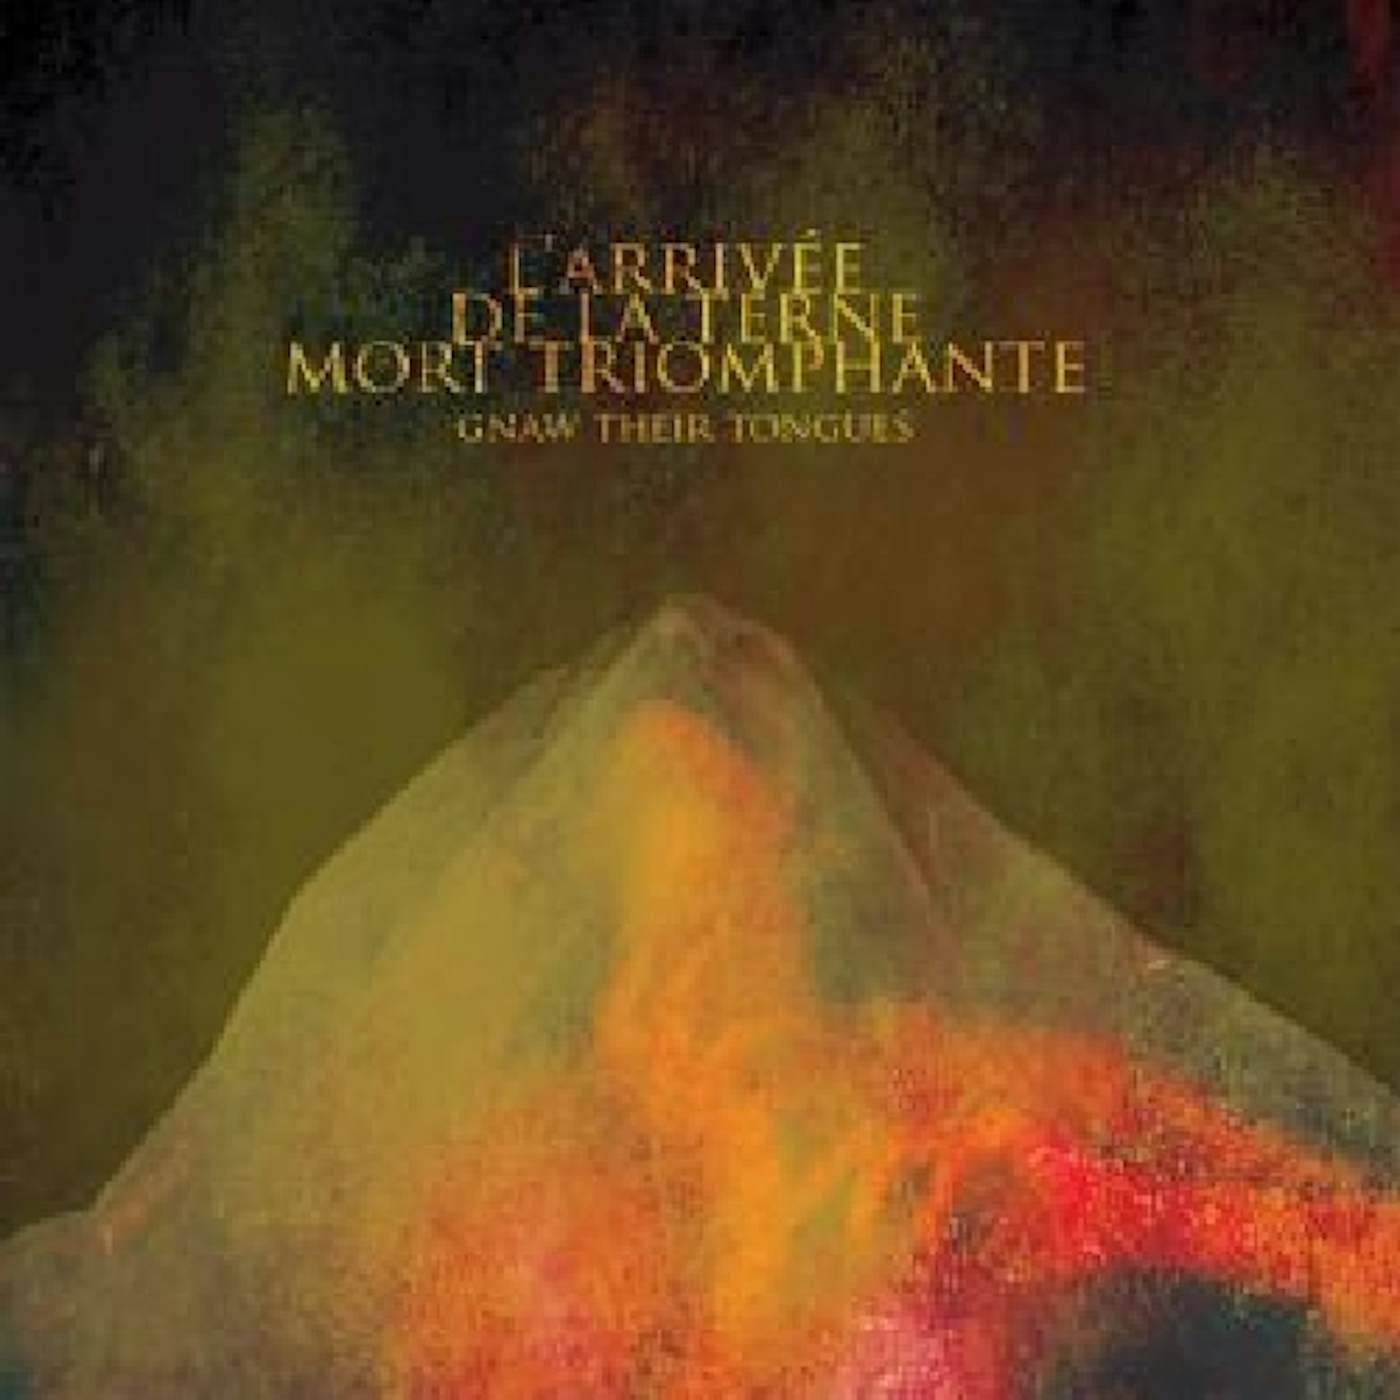 Gnaw Their Tongues L'ARRIVEE DE LA TERNE MORT TRIOMPHANTE CD